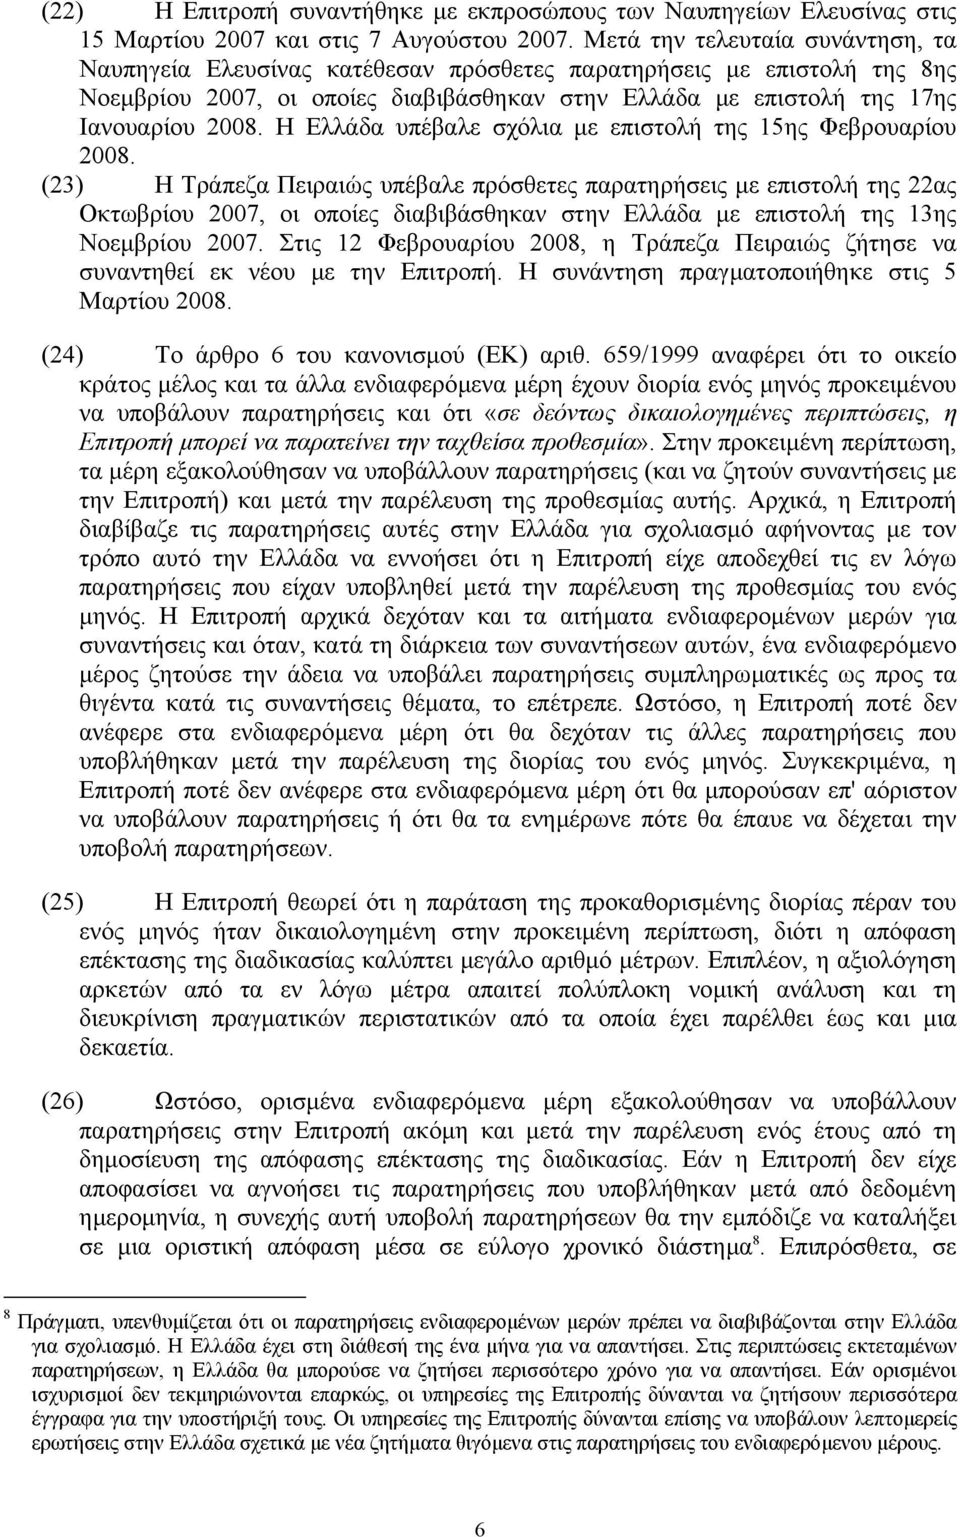 Η Ελλάδα υπέβαλε σχόλια µε επιστολή της 15ης Φεβρουαρίου 2008.